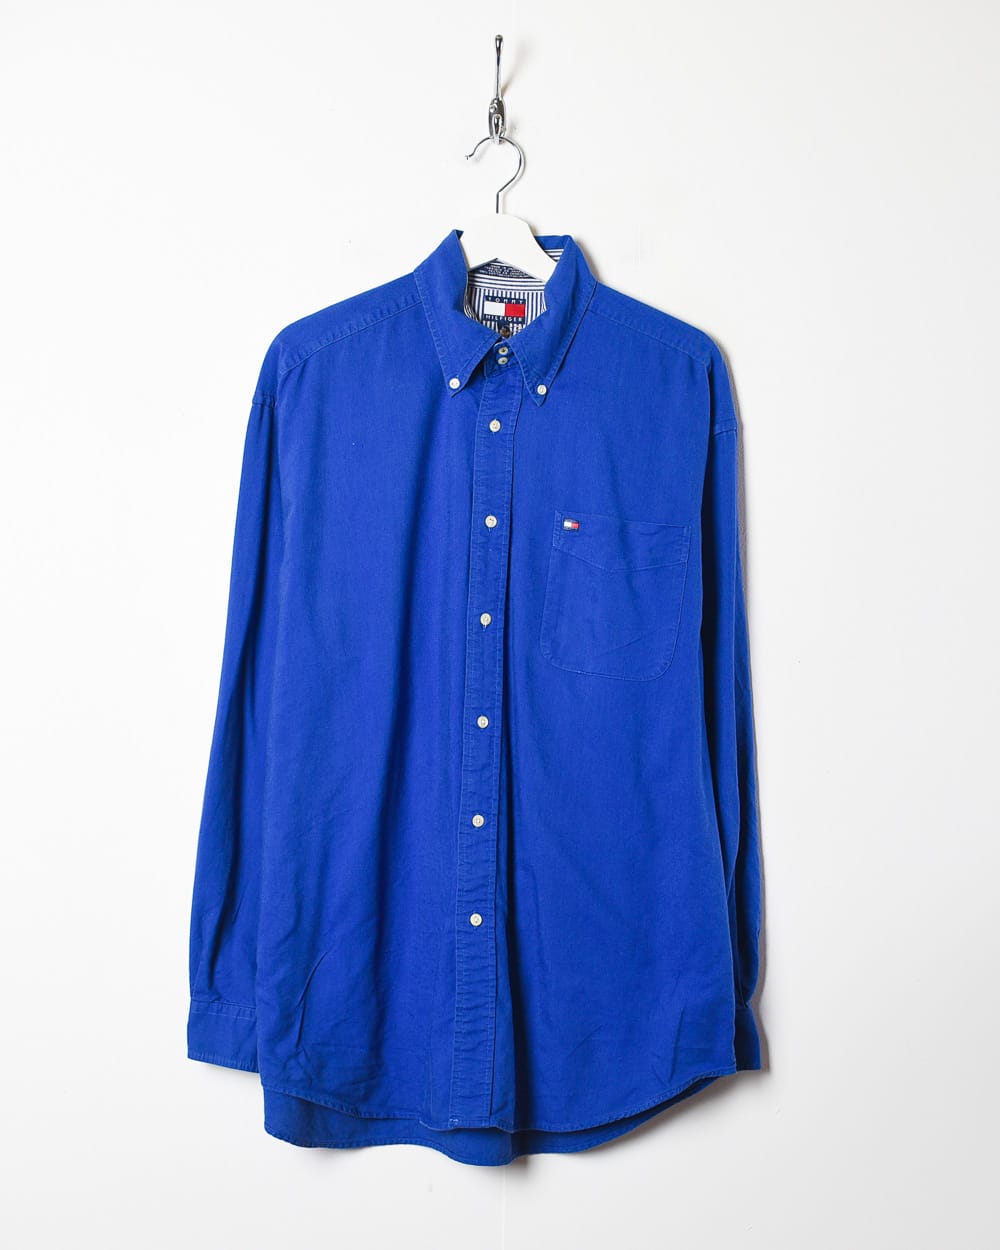 Blue Tommy Hilfiger Shirt - Large